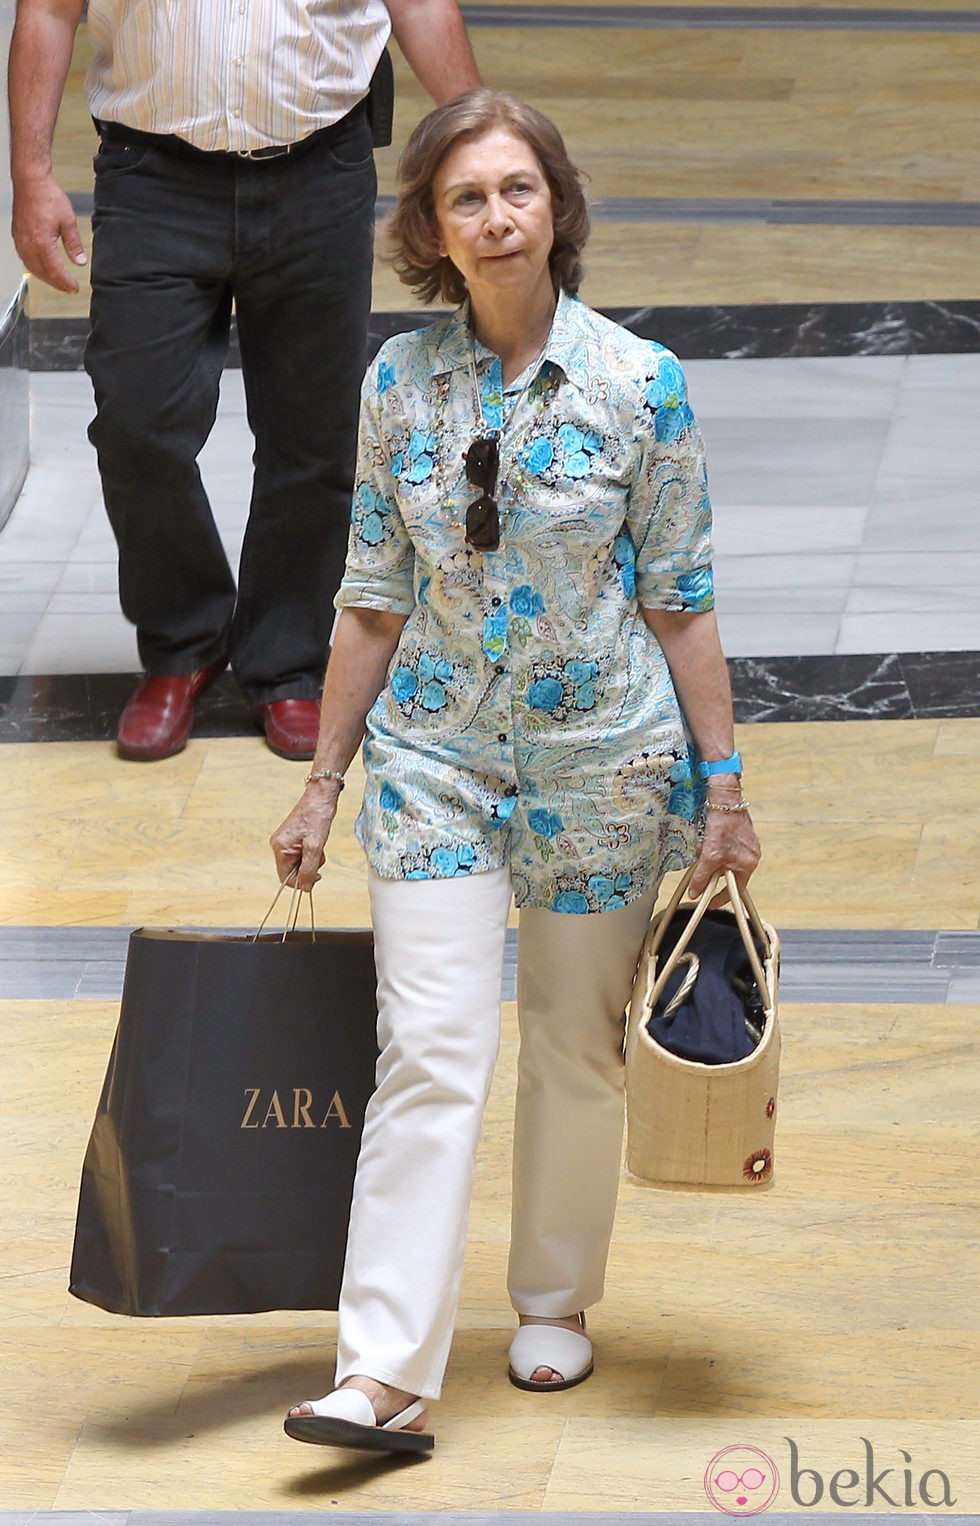 Look de la reina Sofía con blusón de estampado floral y pantalón blanco en verano de 2010